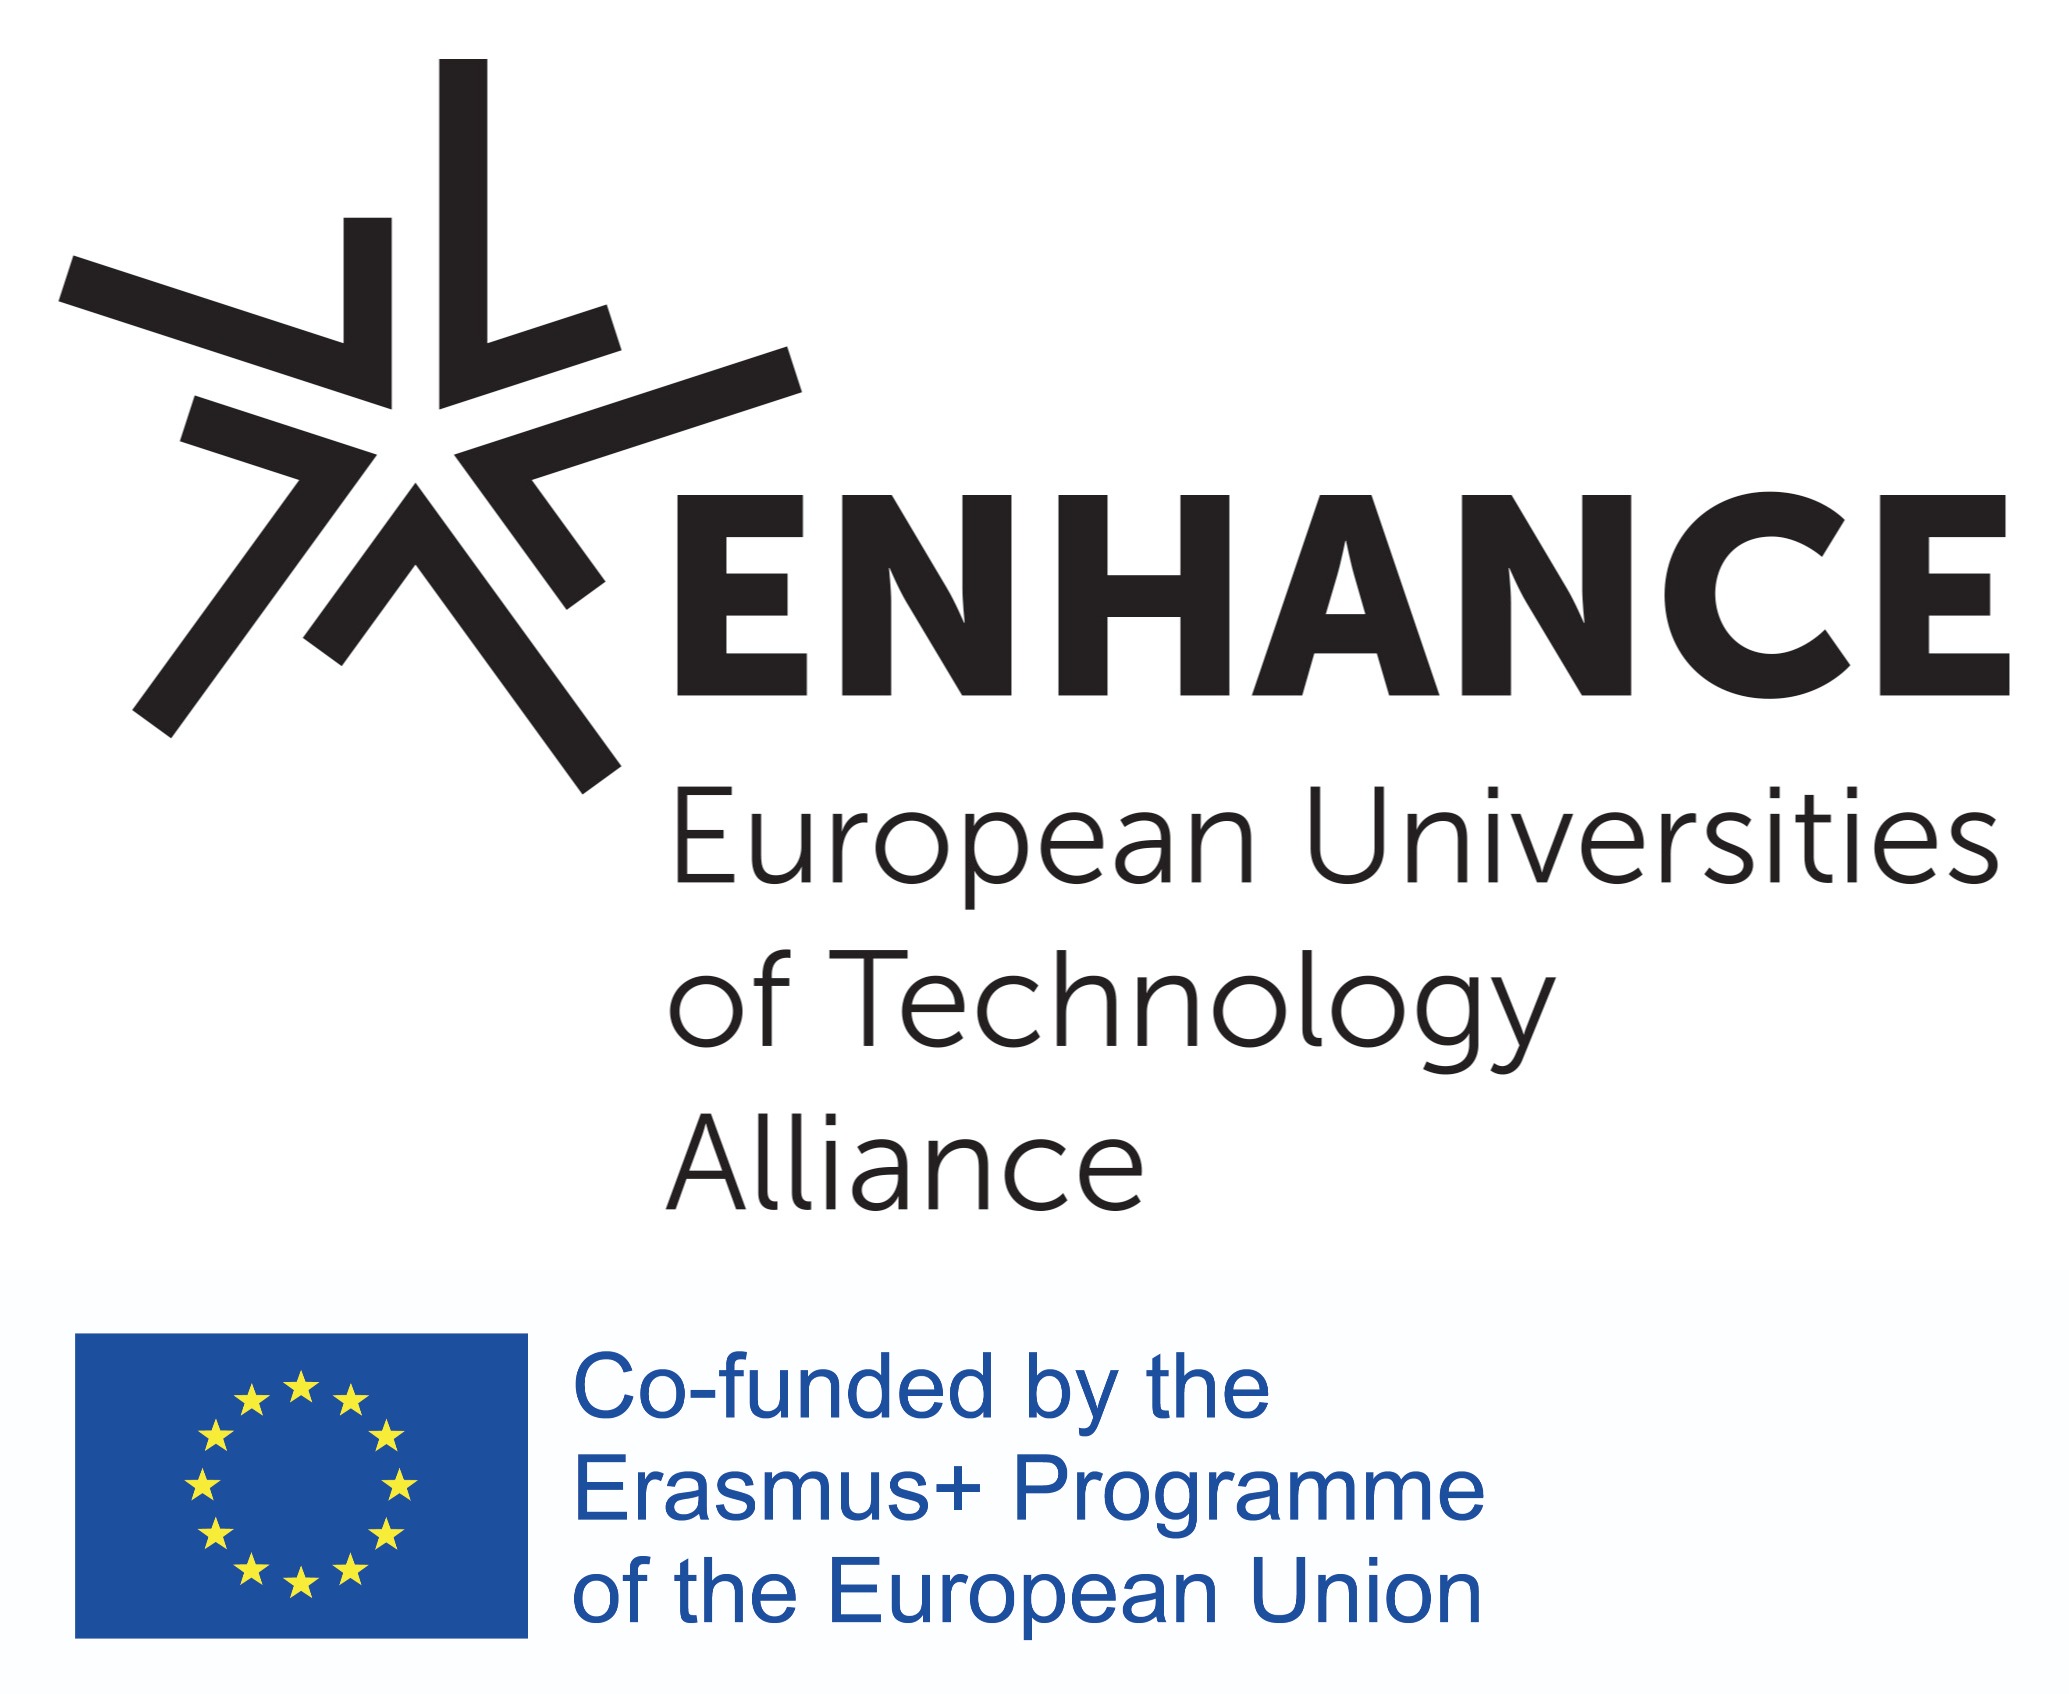 Von Oktober 2019 bis Februar 2020 unterstützte city2science die, von der TU Berlin koordinierte, europäische Hochschulallianz „ENHANCE“ bei der Bewerbung im Rahmen der Ausschreibung „European Universities“.